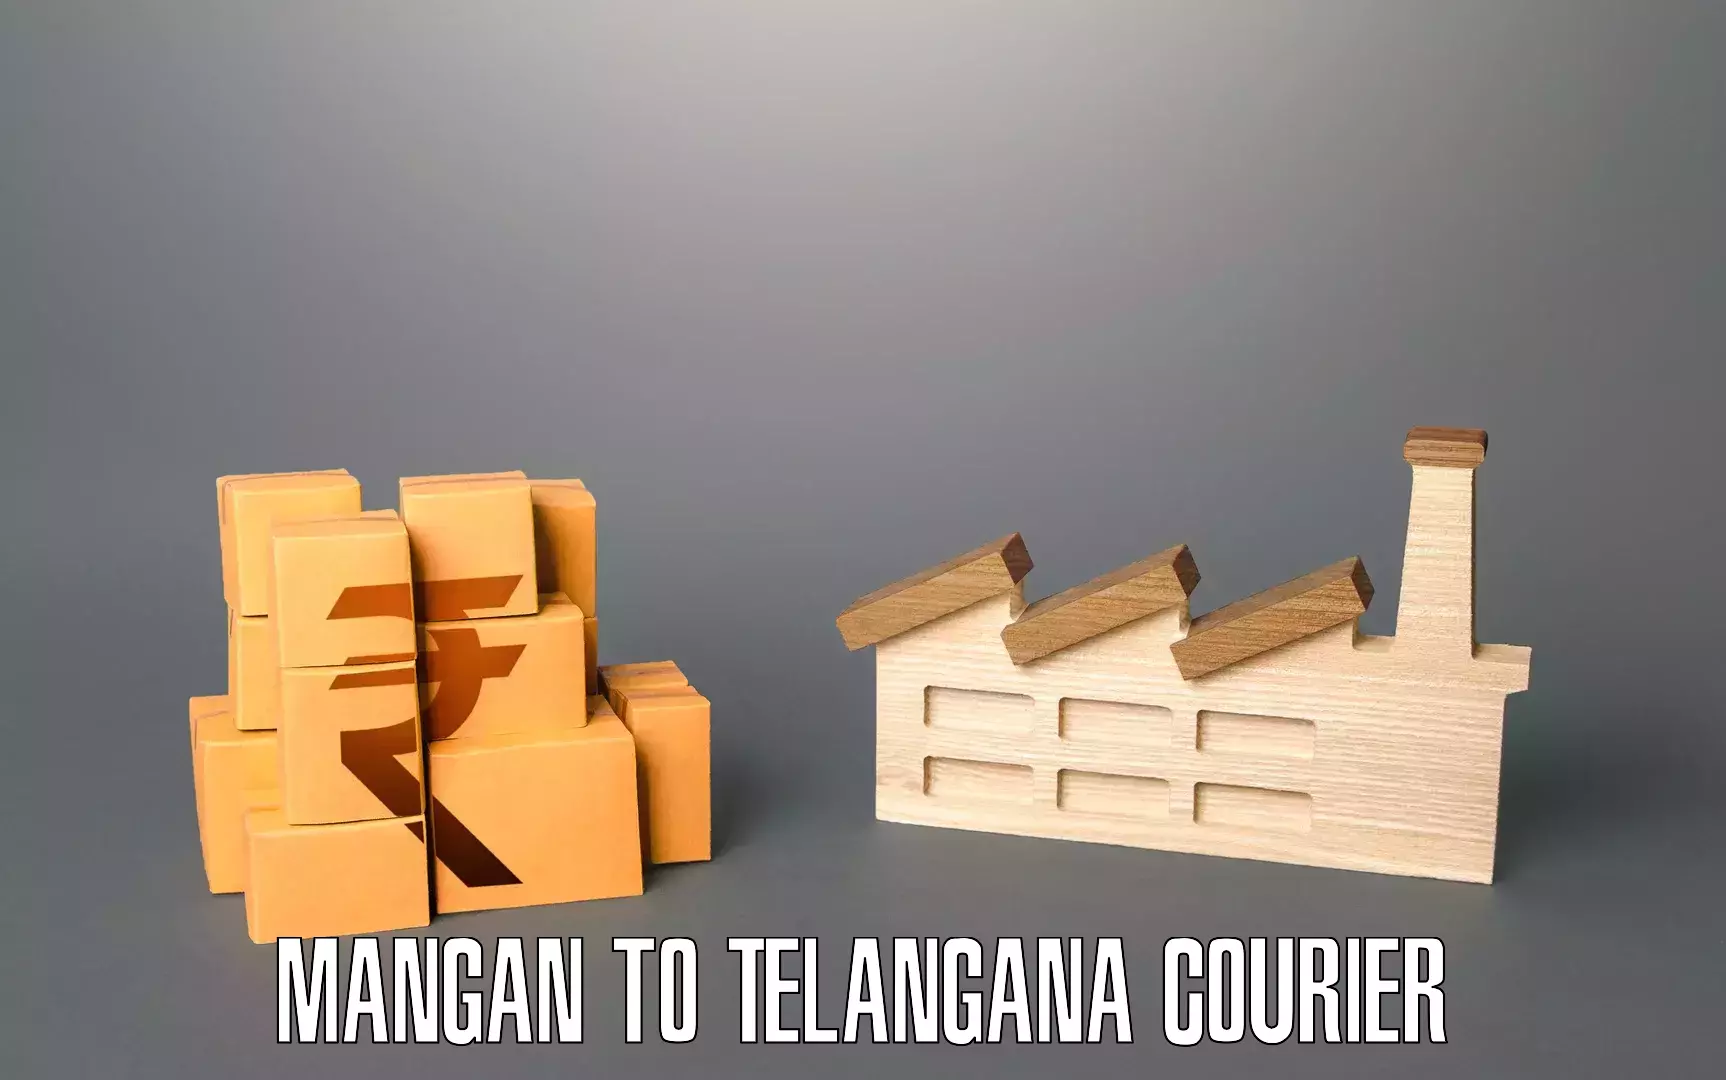 Professional furniture moving Mangan to Telangana